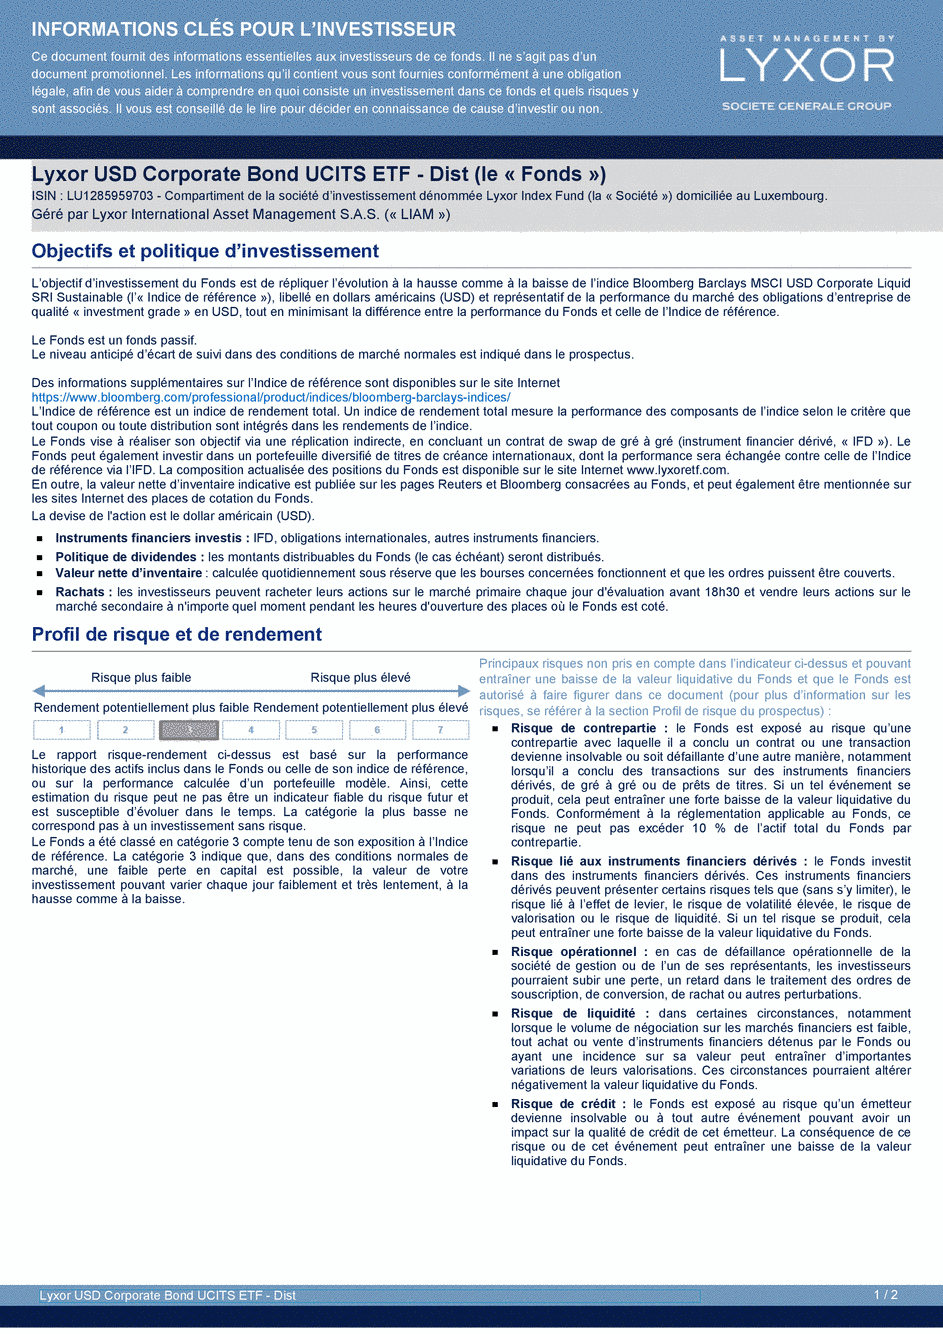 DICI Lyxor ESG USD Corporate Bond (DR) UCITS ETF - Dist - 26/08/2019 - Français